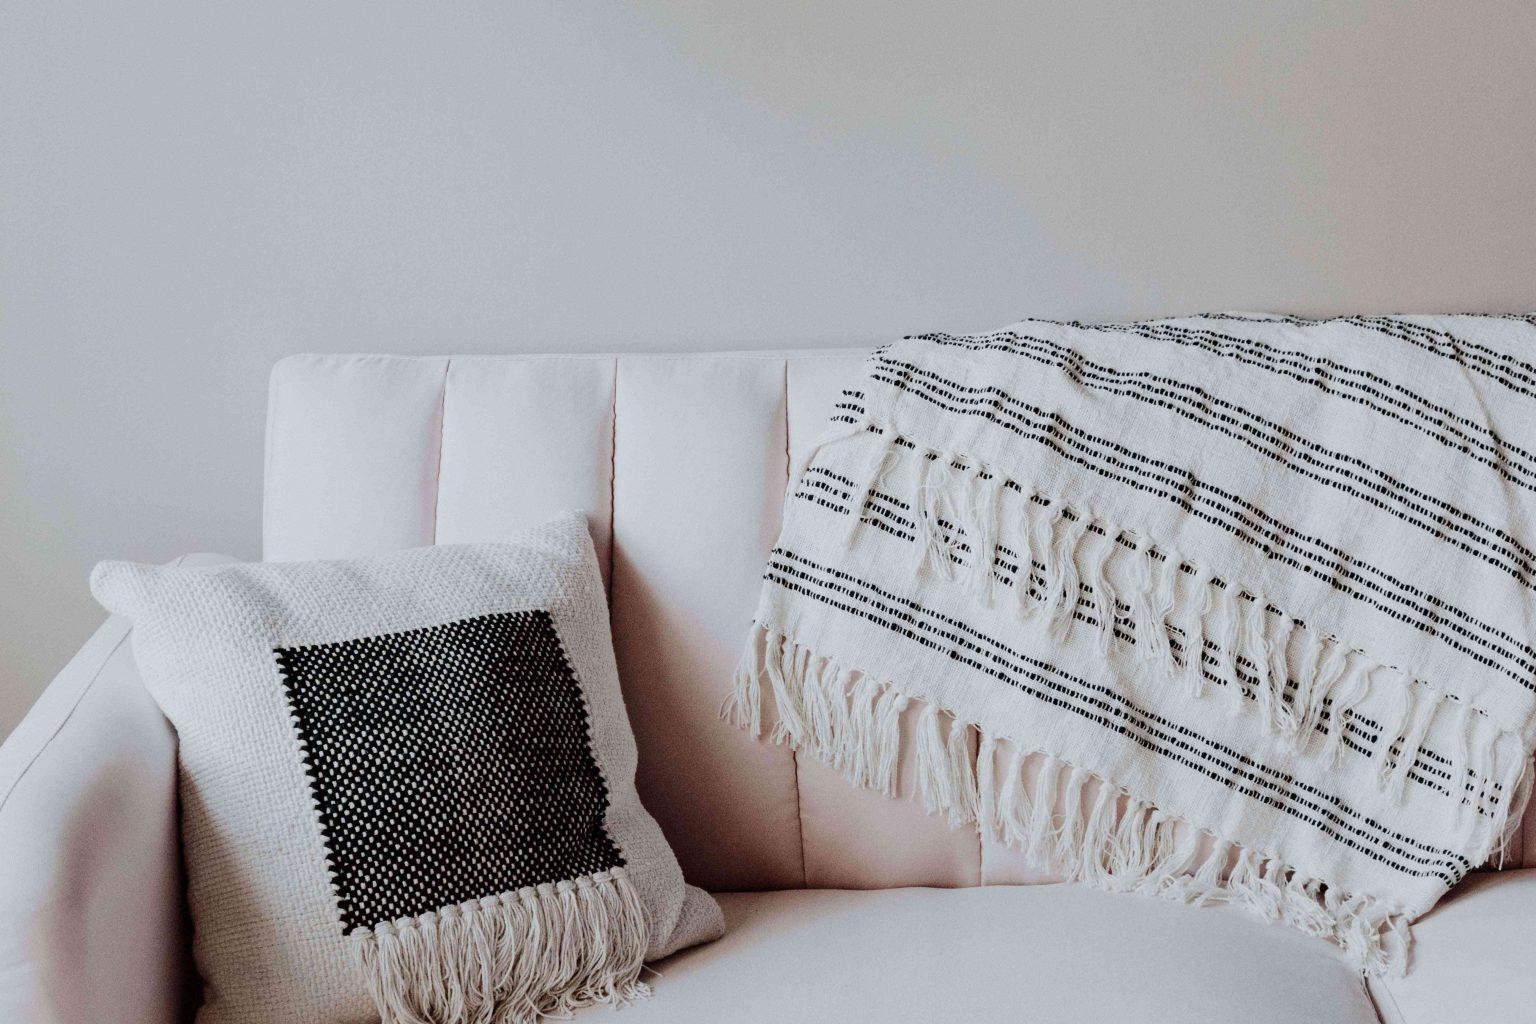 brighten-home-with-throw-pillows-teachworkoutlove.com